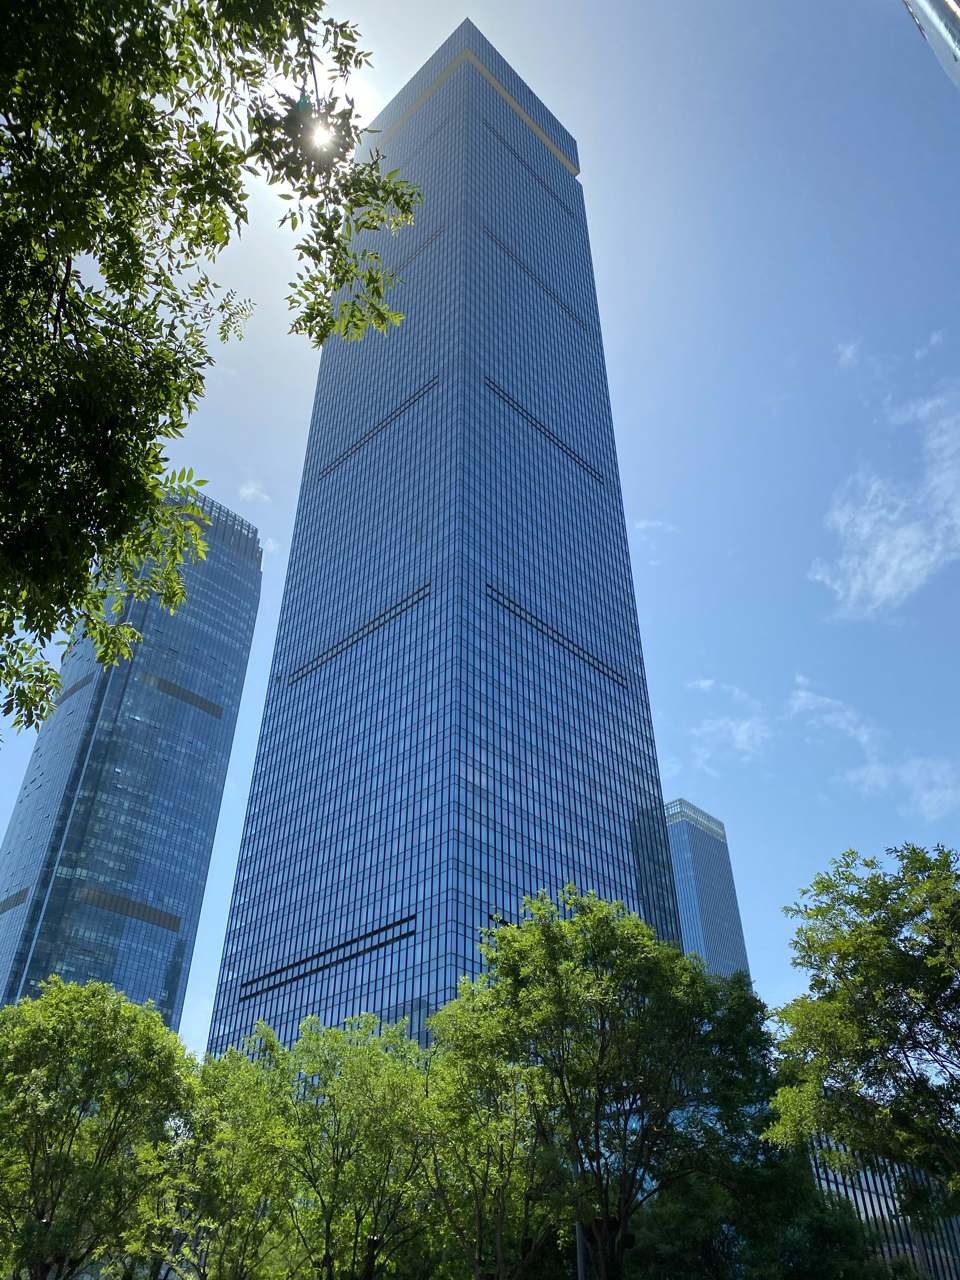 西安最高建筑图片